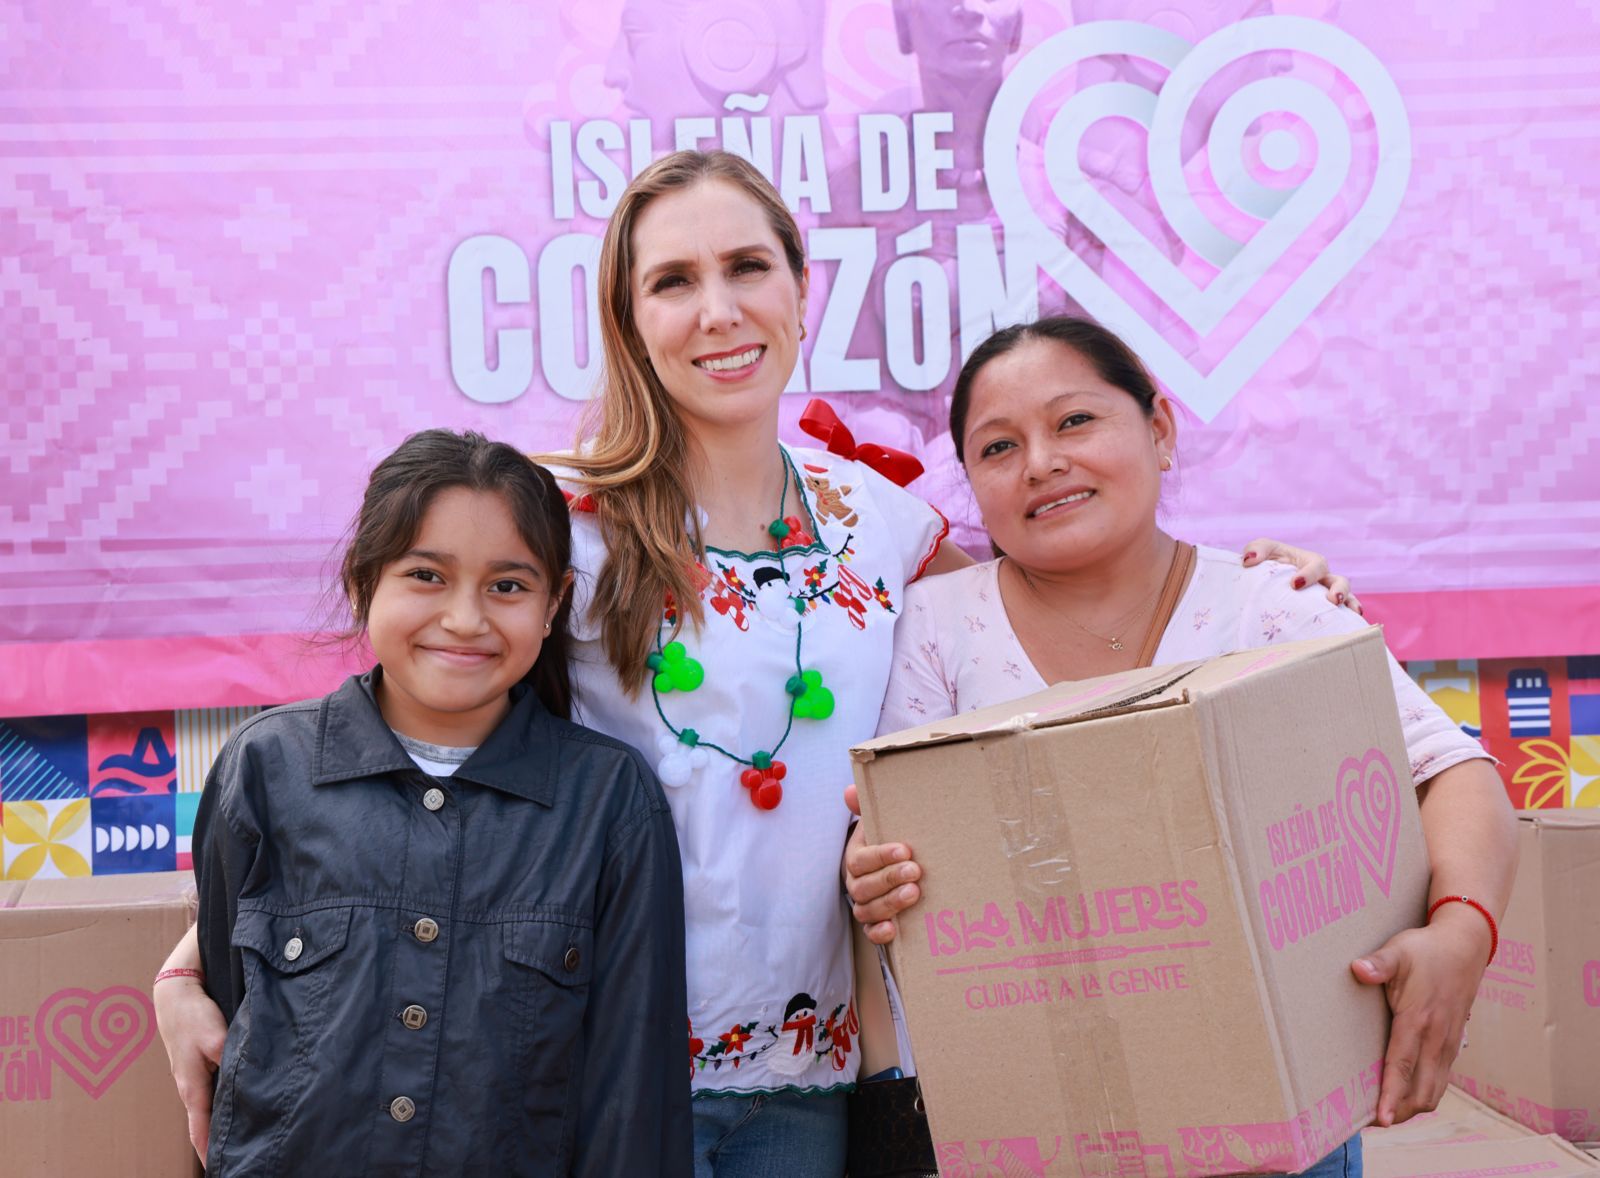 Programa Isleña de Corazón, que impulsa Atenea Gómez Ricalde, amplía su cobertura en Isla Mujeres